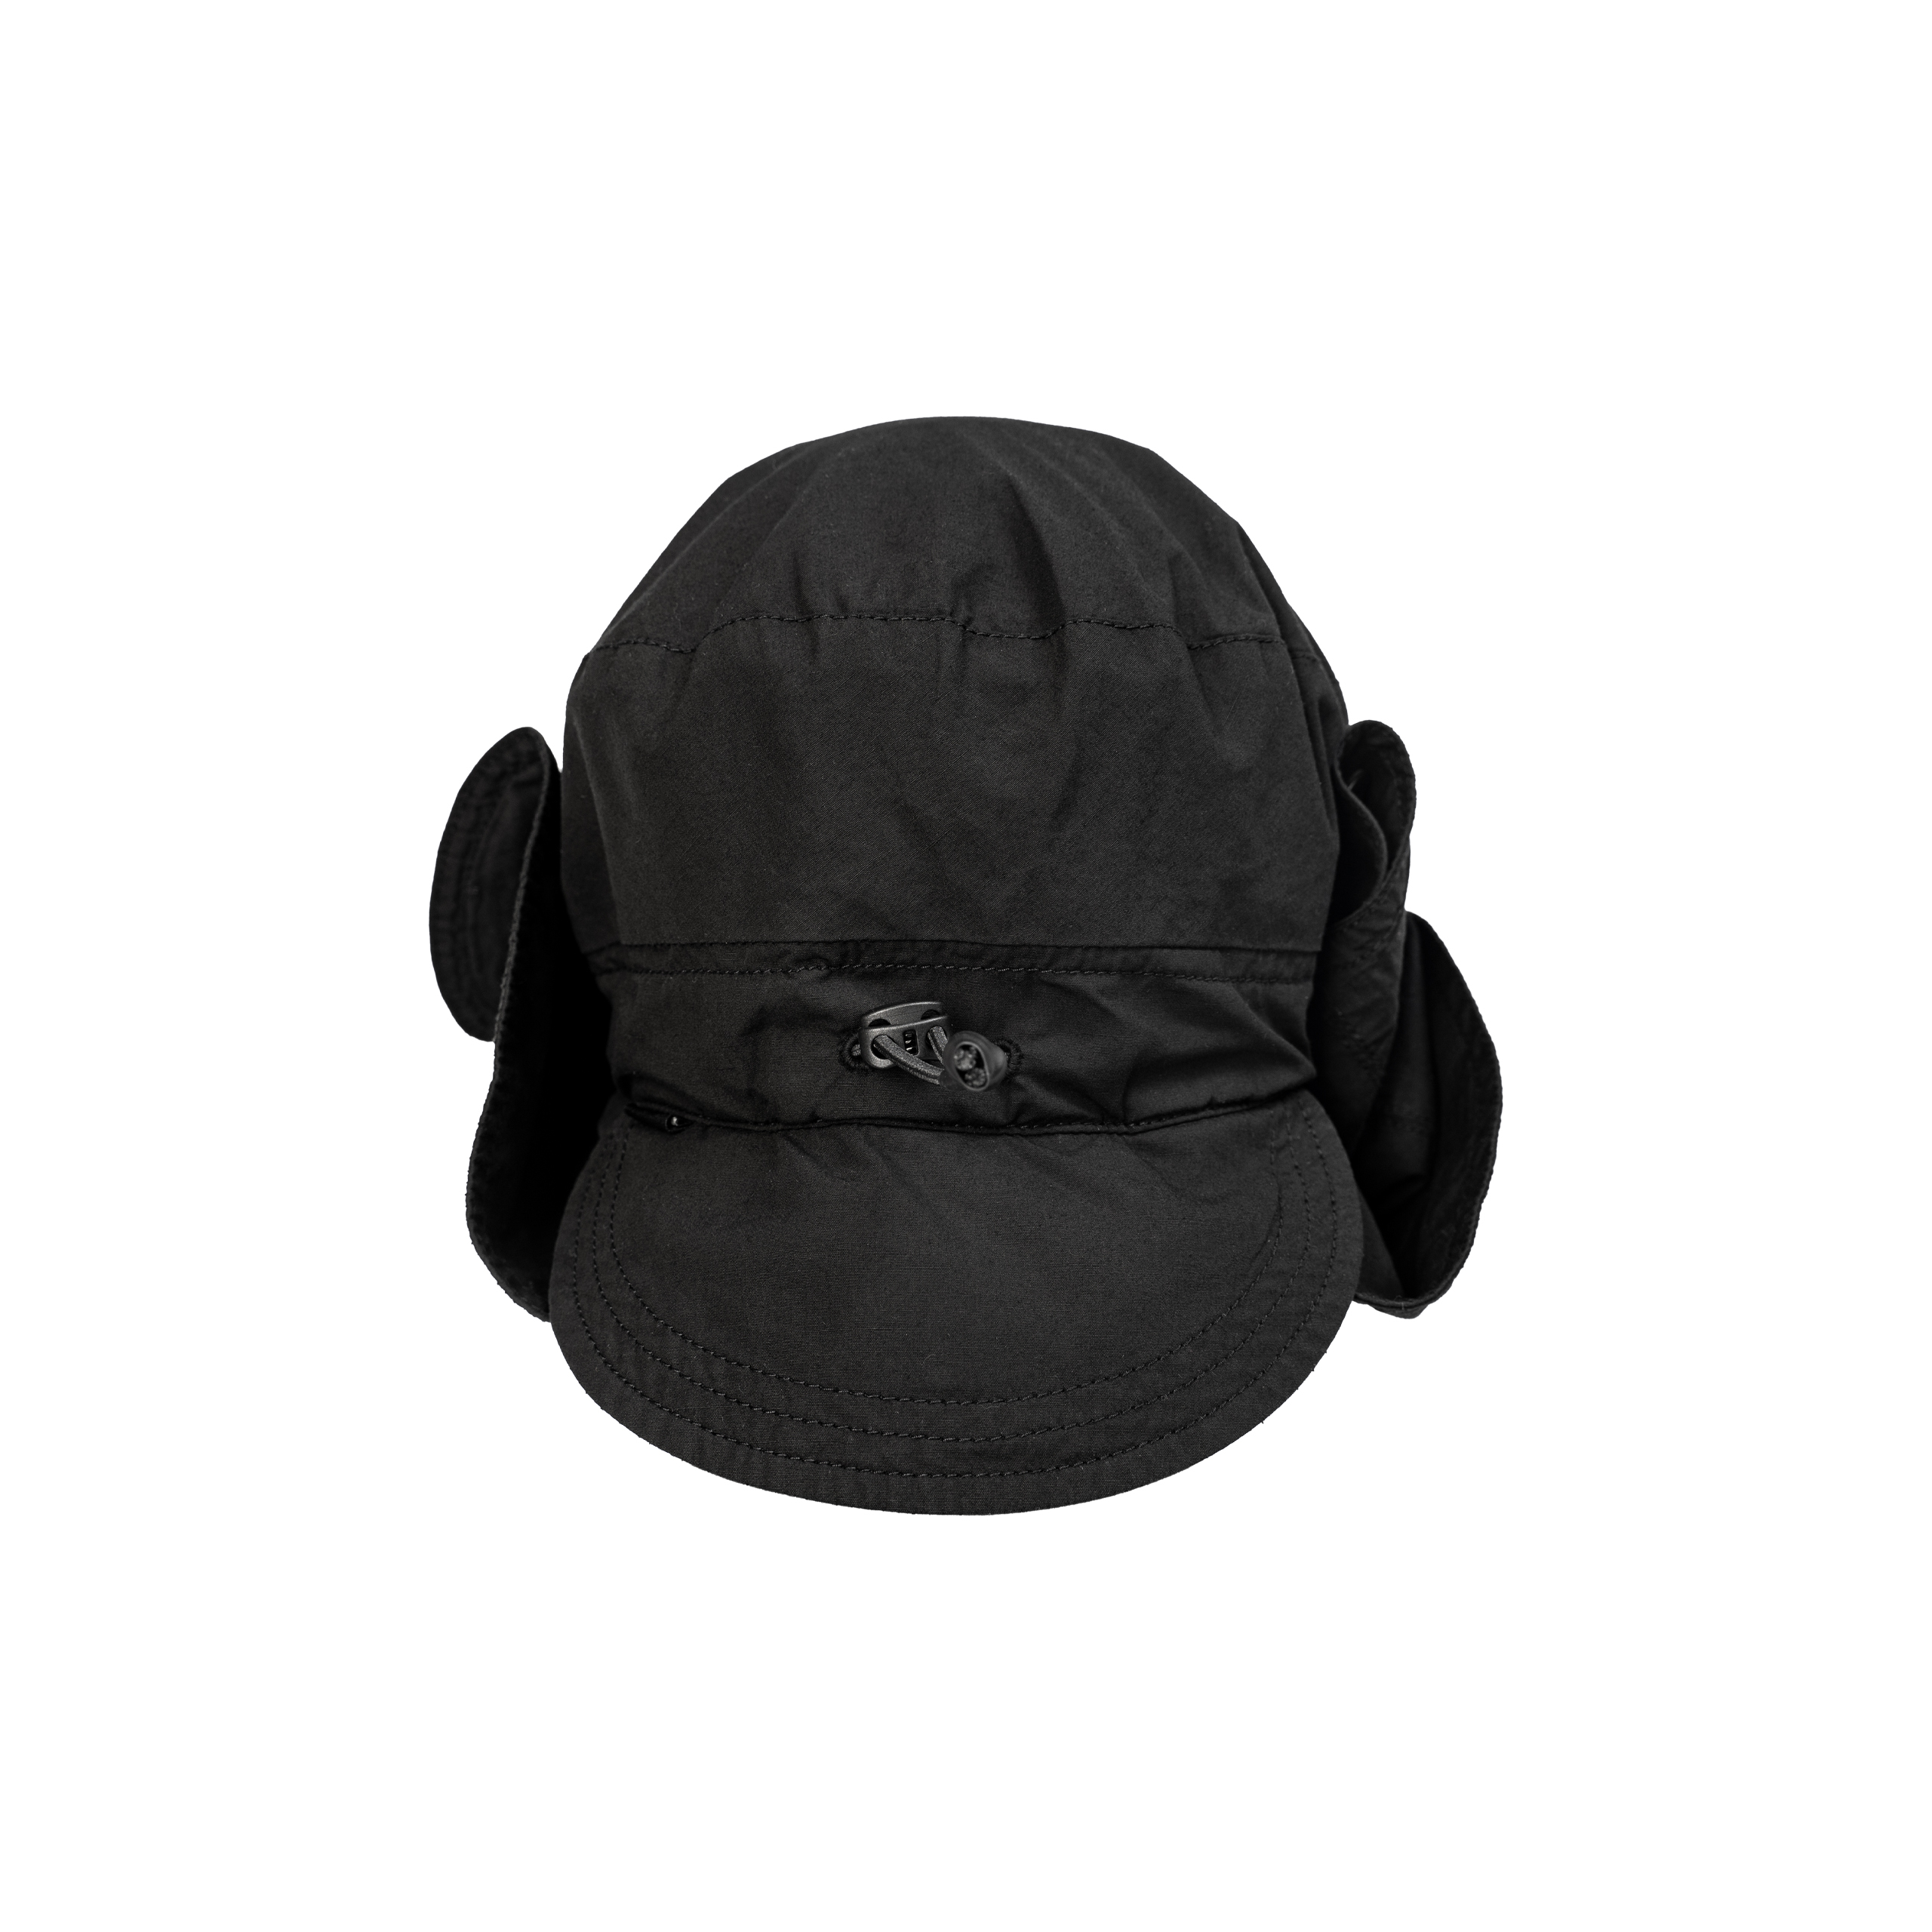 Черная шапка-маска на кнопках The Viridi-Anne VI/3501/09/blk, размер One Size VI/3501/09/blk - фото 4